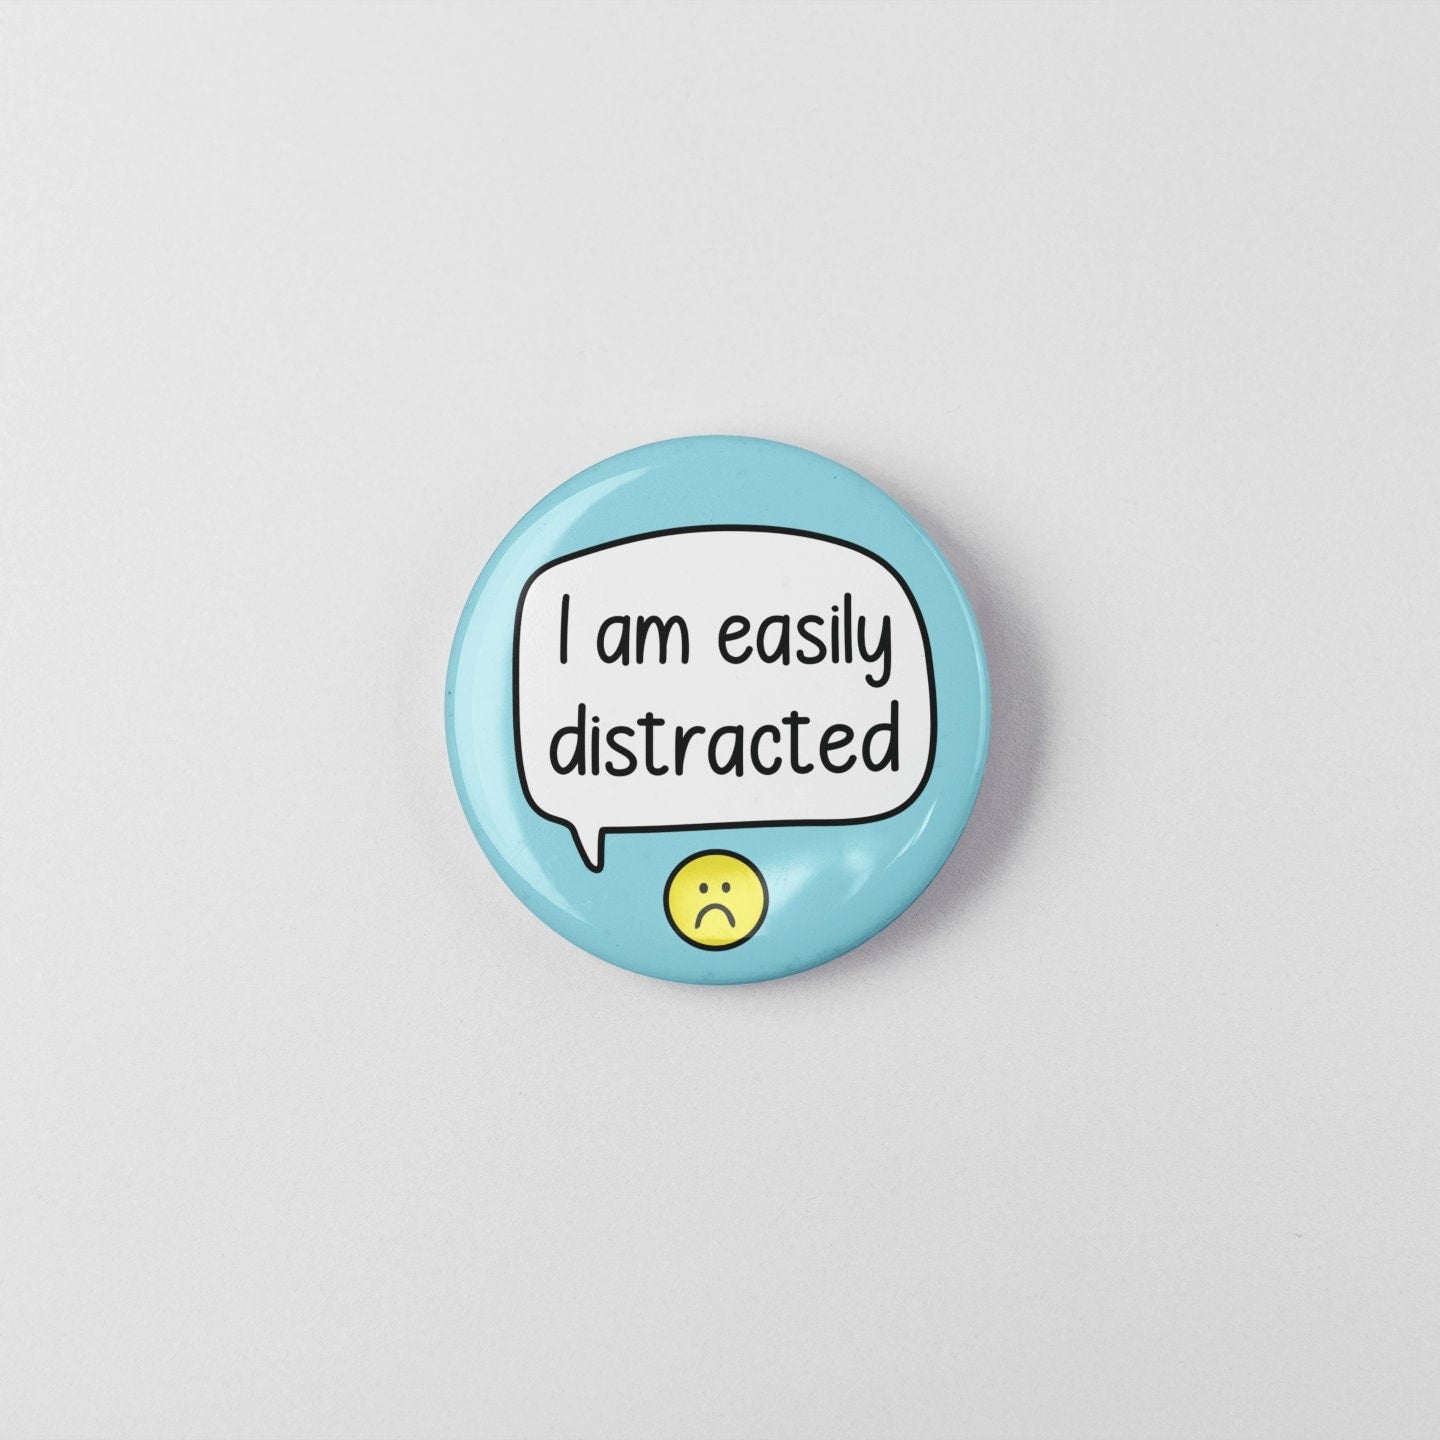 I Am Easily Distracted Badge Pin | Mental Health Pins - ADHD Badges - ADHD Pin - Self Care